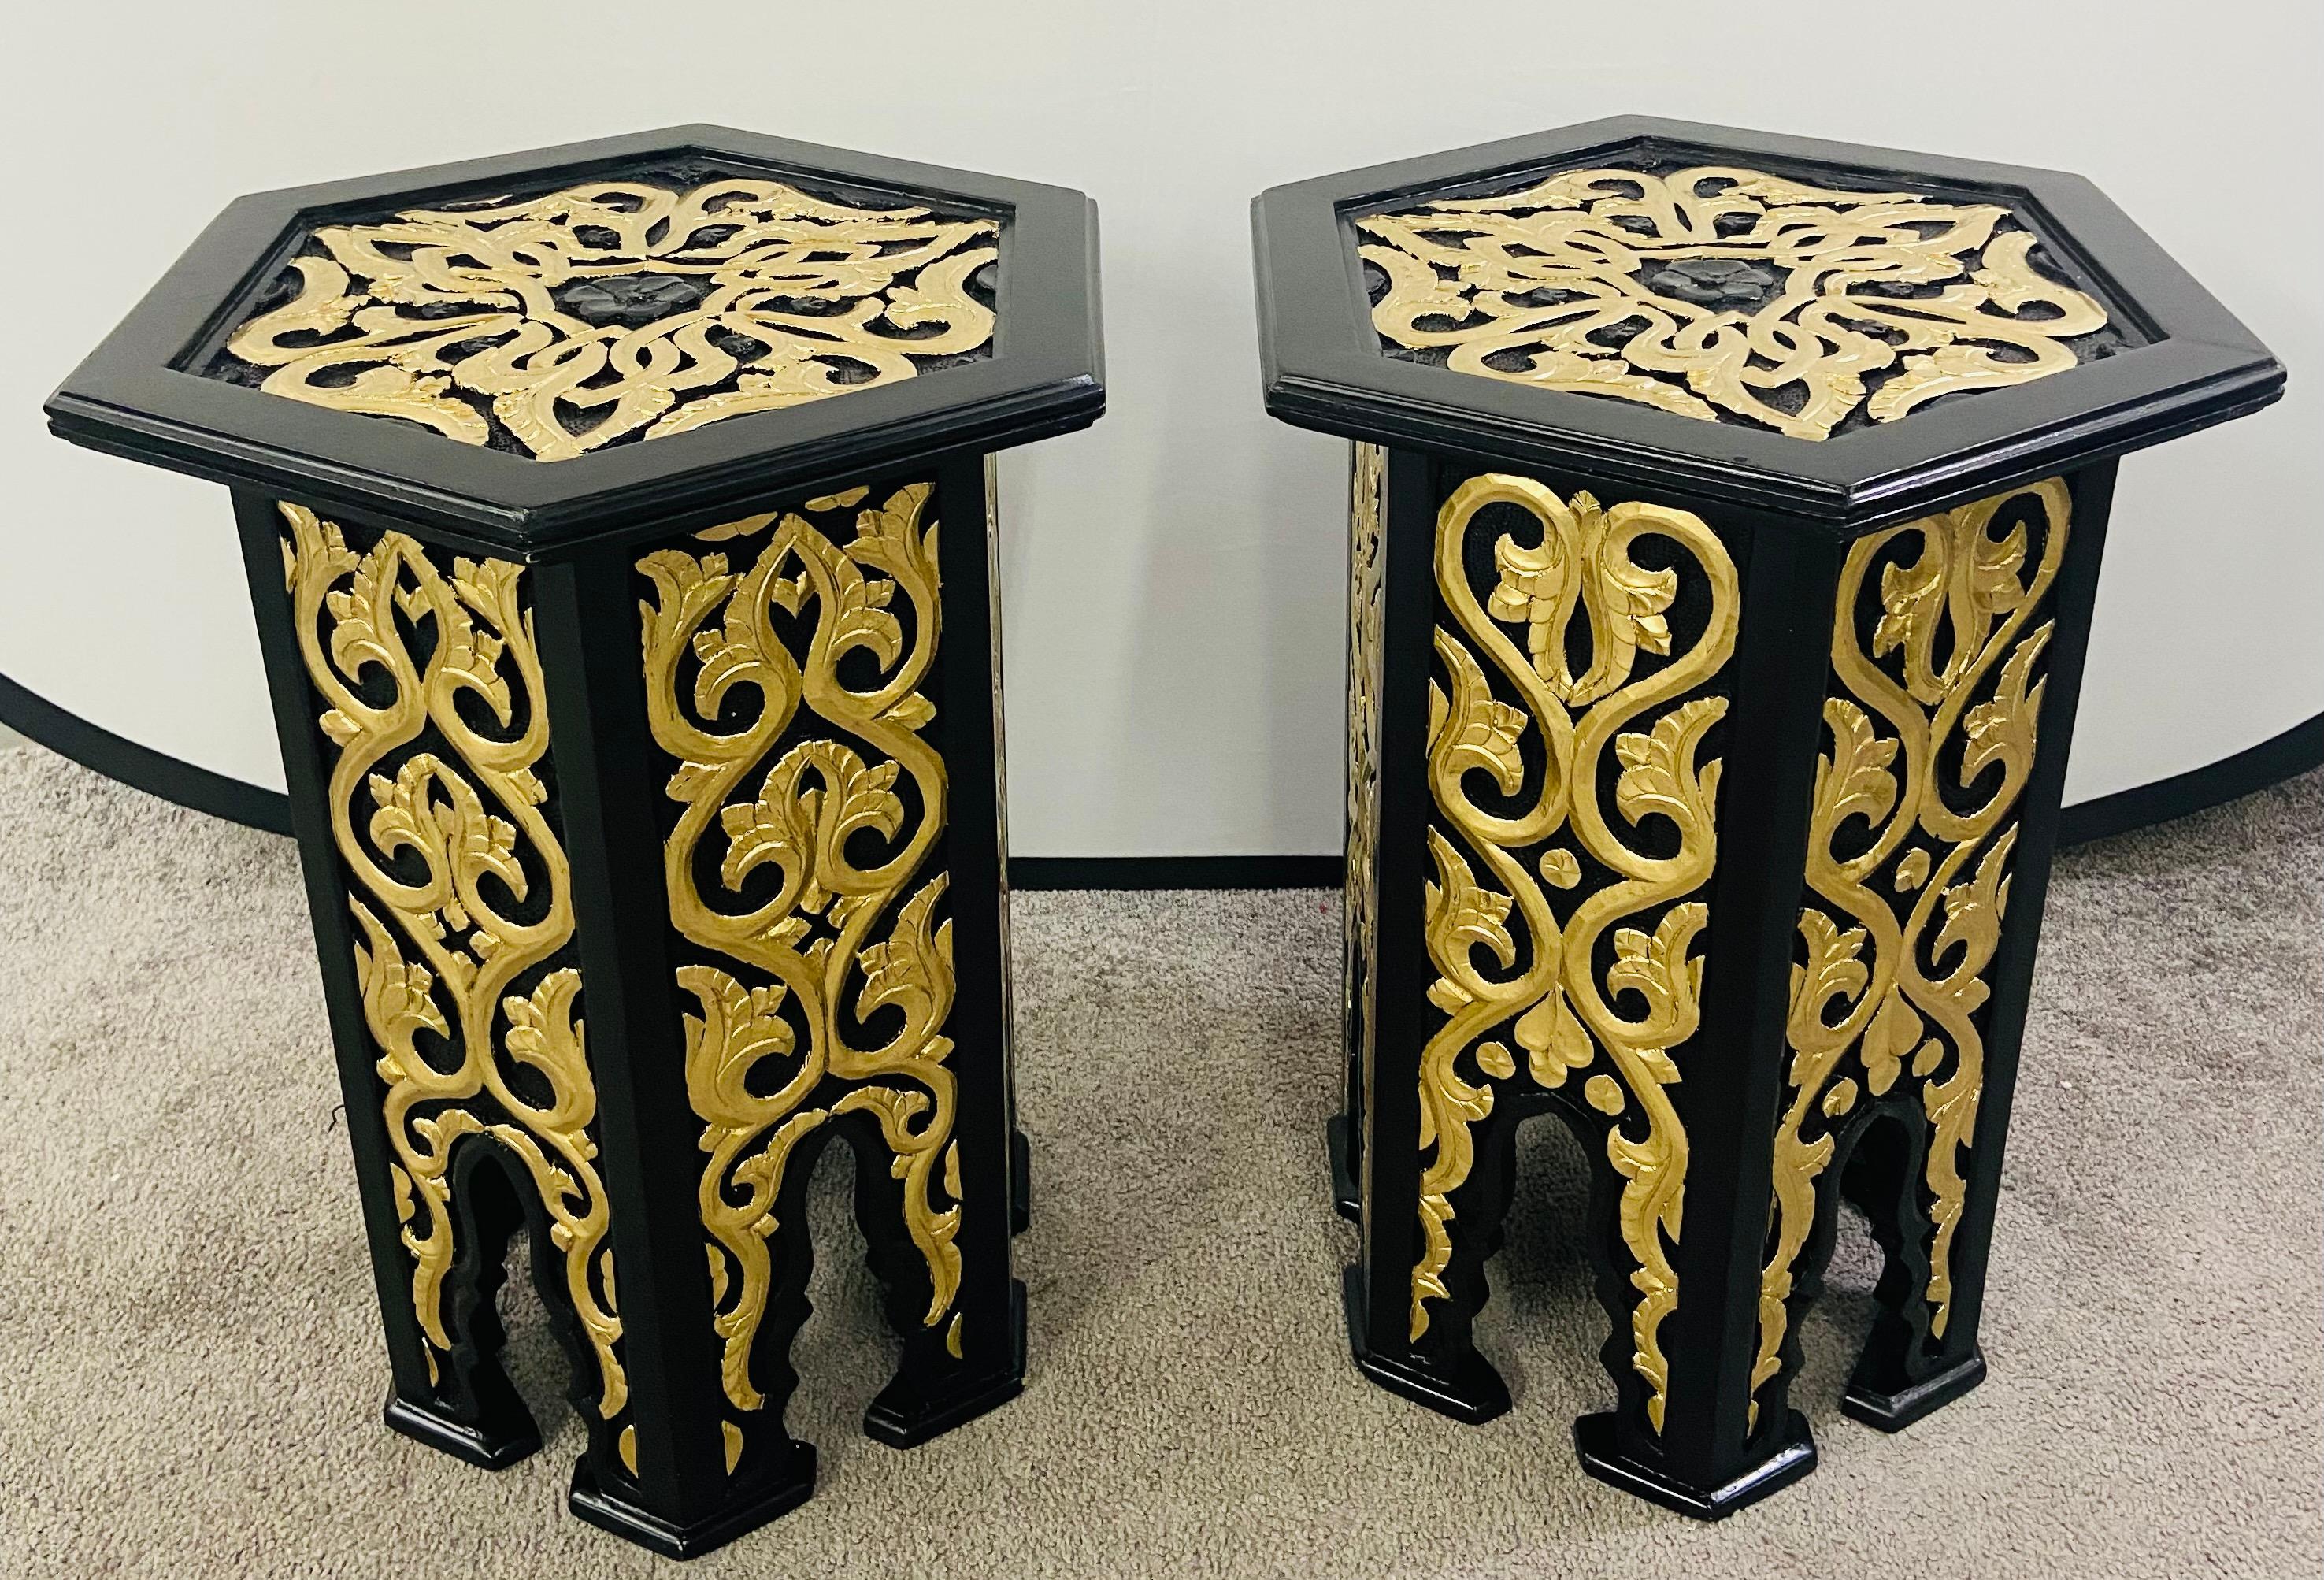 Une paire exquise de tables d'appoint de style marocain Hollywood Regency de forme hexagonale. Les tables en ébène fabriquées à la main sont finement décorées de motifs de feuilles peints en or et de belles arches, un élément de base de